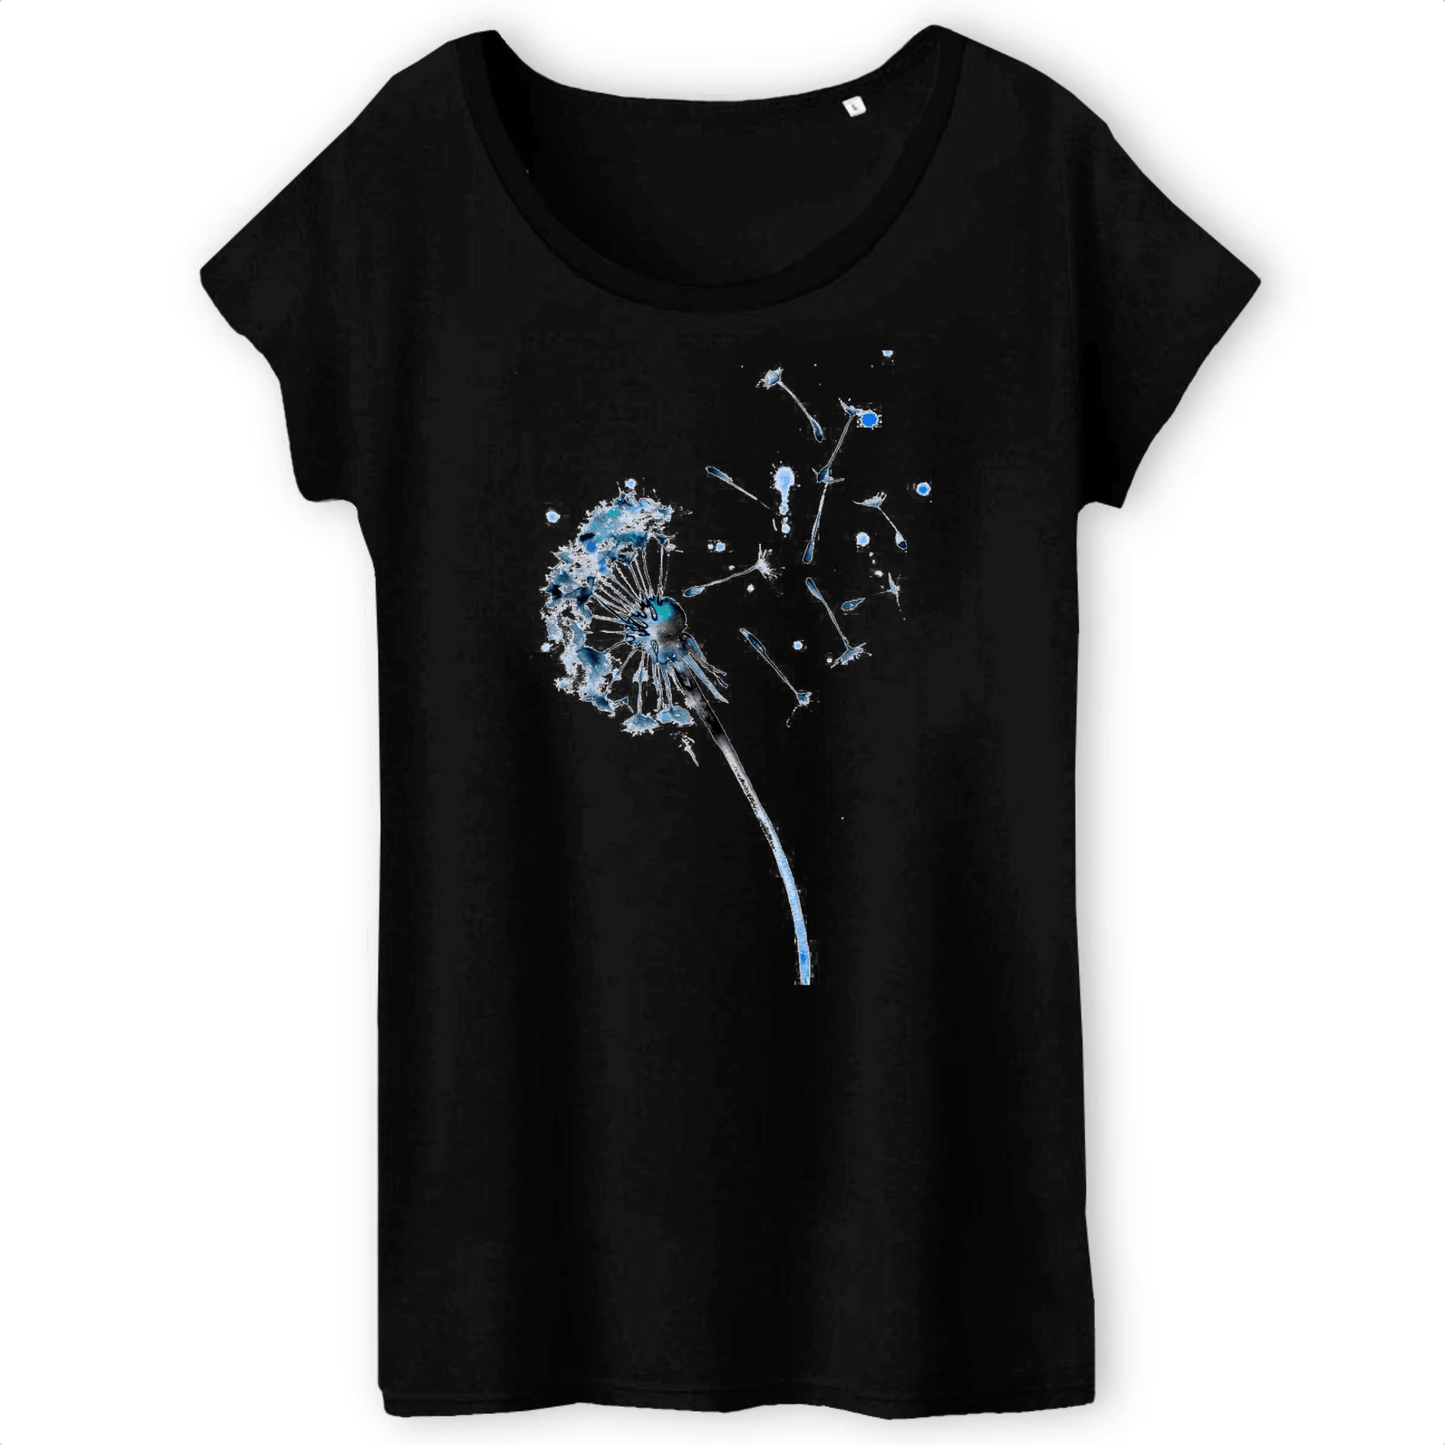 Blue Dandelion Women's T-Shirt - 100% organic - Premium T-shirt Femme BandC - TW043 - DTG - Just €34.95! Shop now at San Rocco Italia